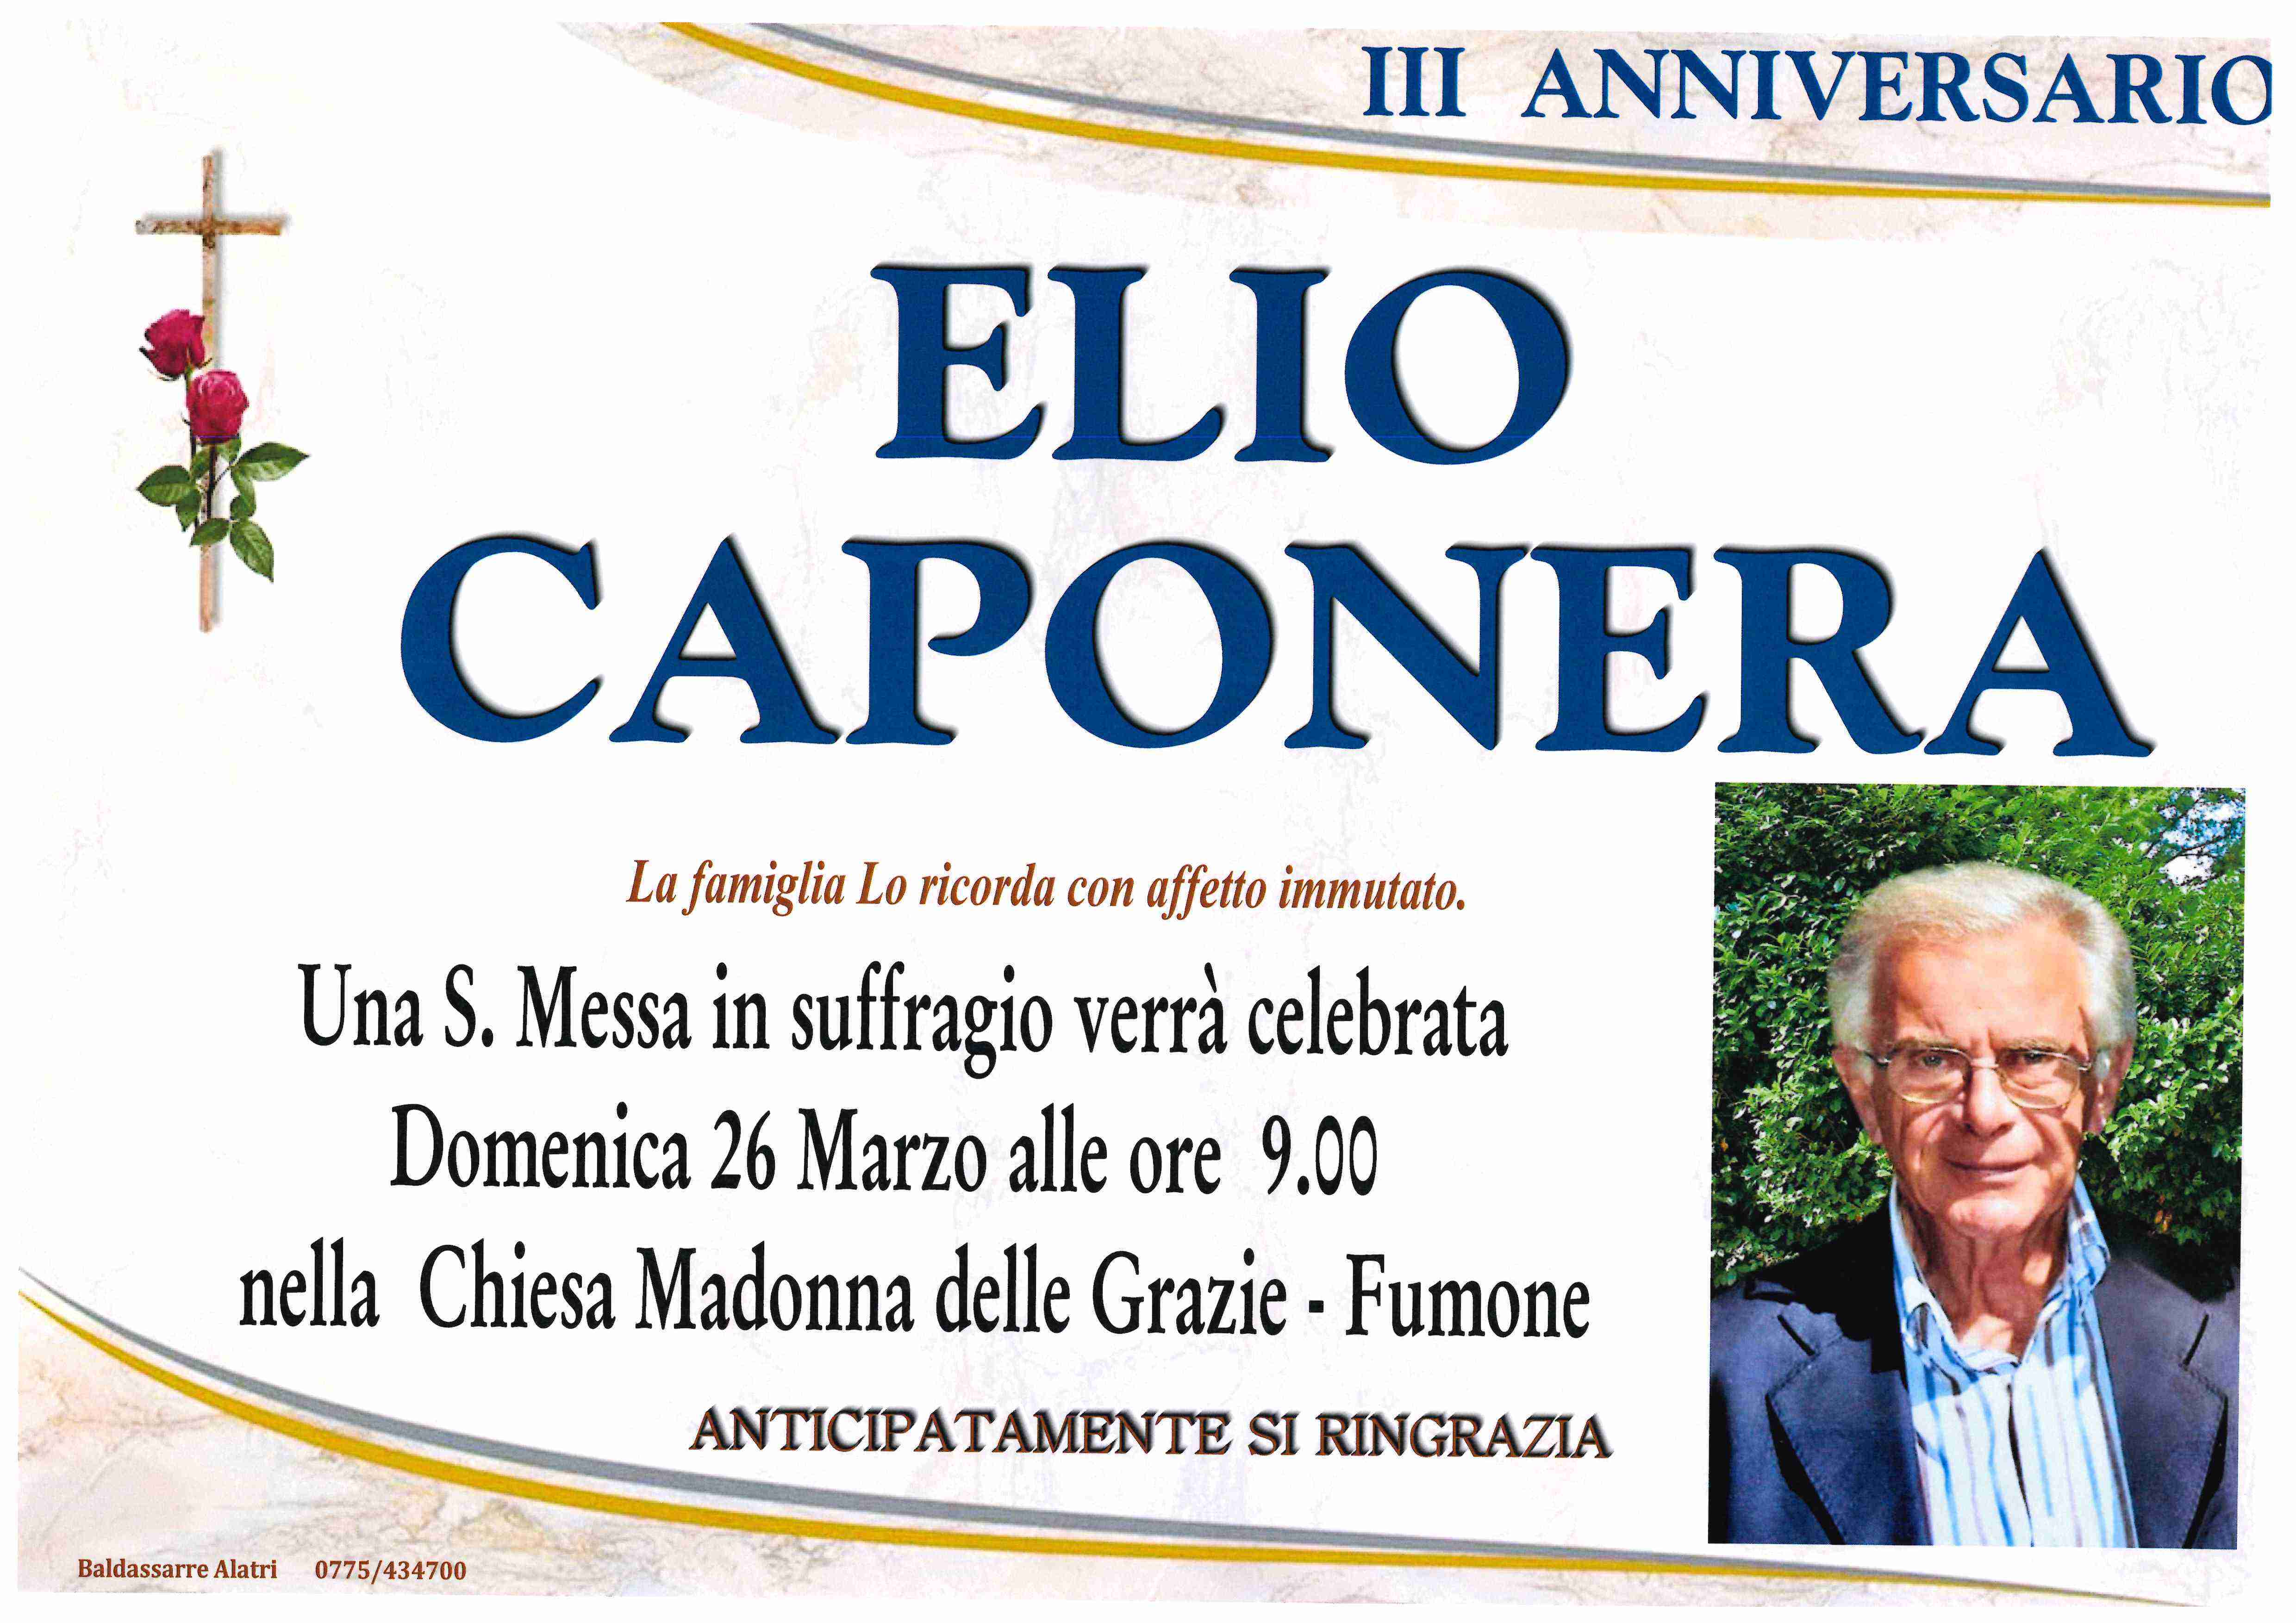 Elio Caponera